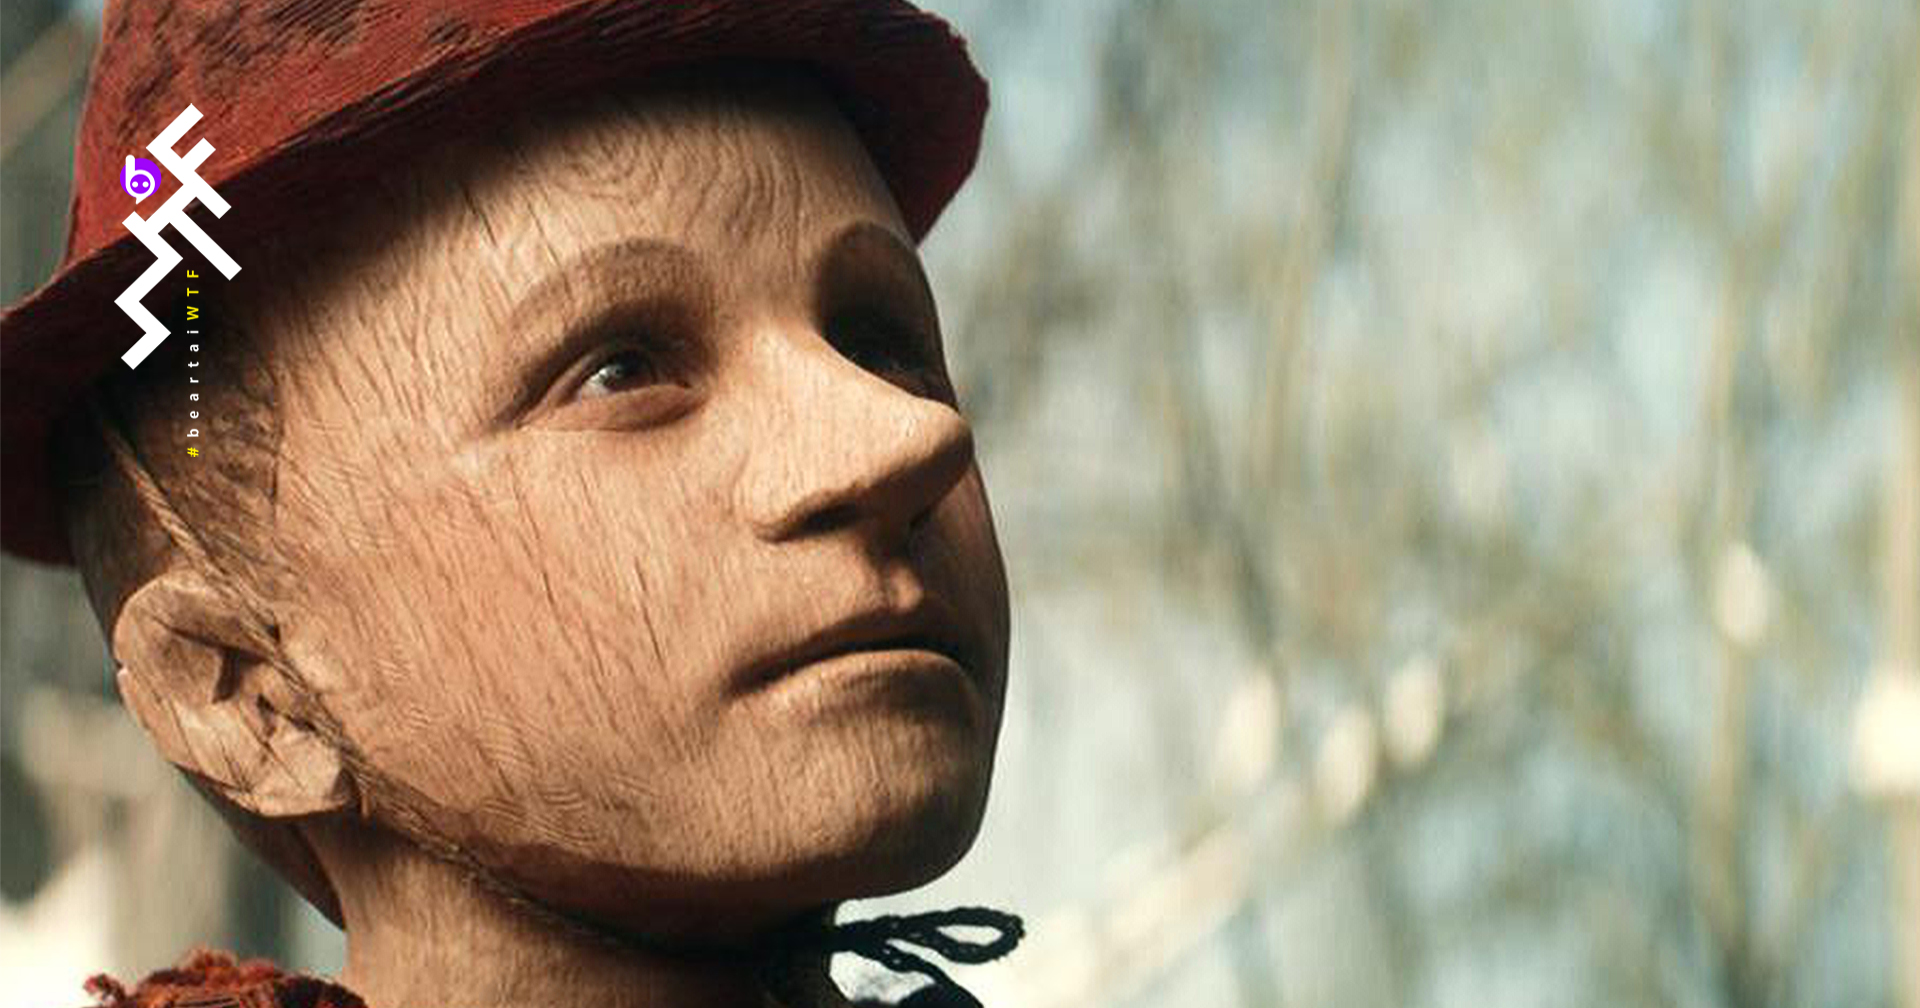 [รีวิว] Pinocchio: นิทานสอนเด็กฉบับเอาไม้ท่อนหวดกบาล ที่แอบดูยากเกินเด็กดู